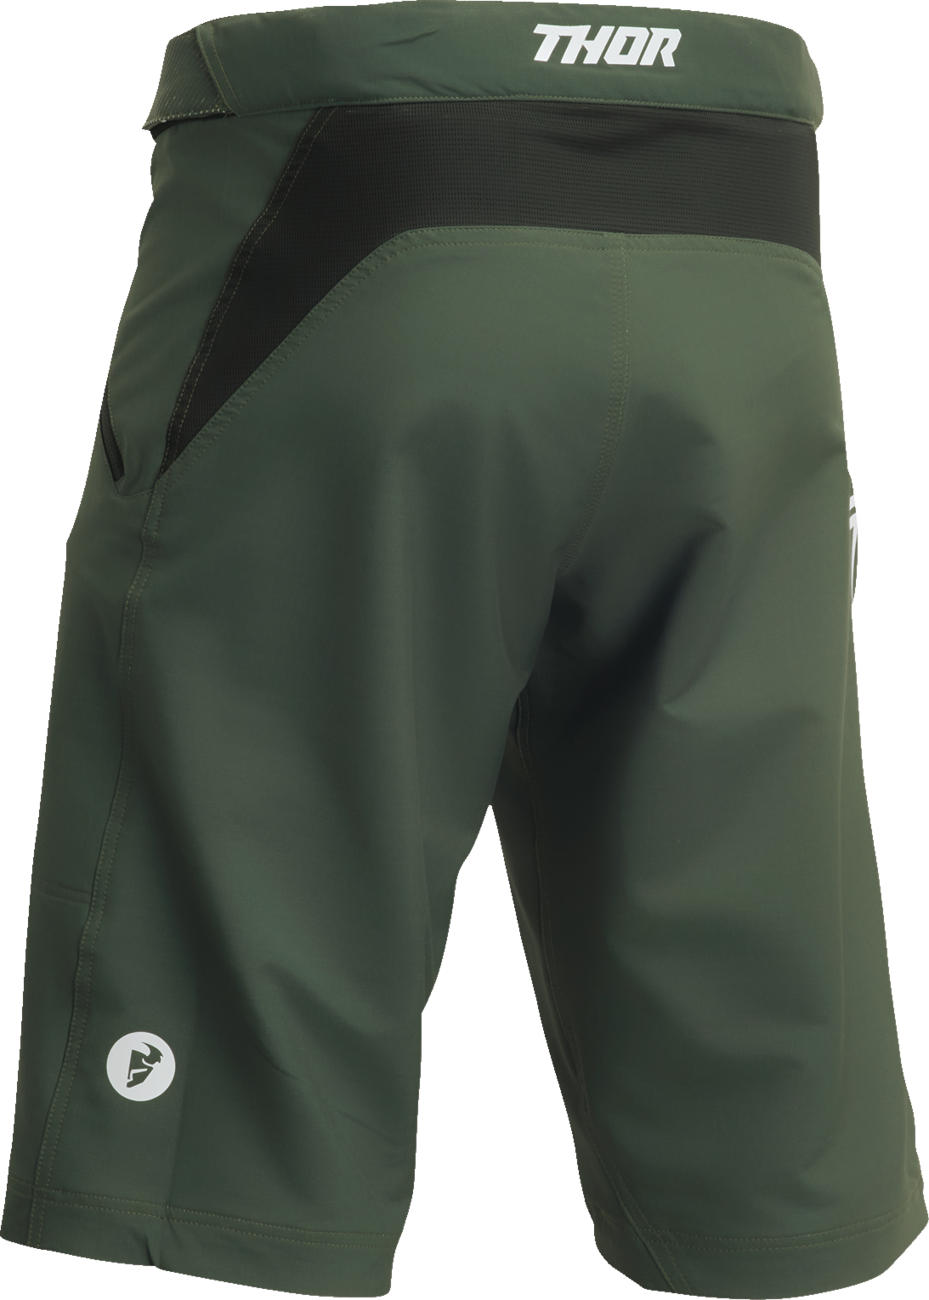 Pantalones cortos THOR Intense - Verde bosque - US 30 5001-0289 